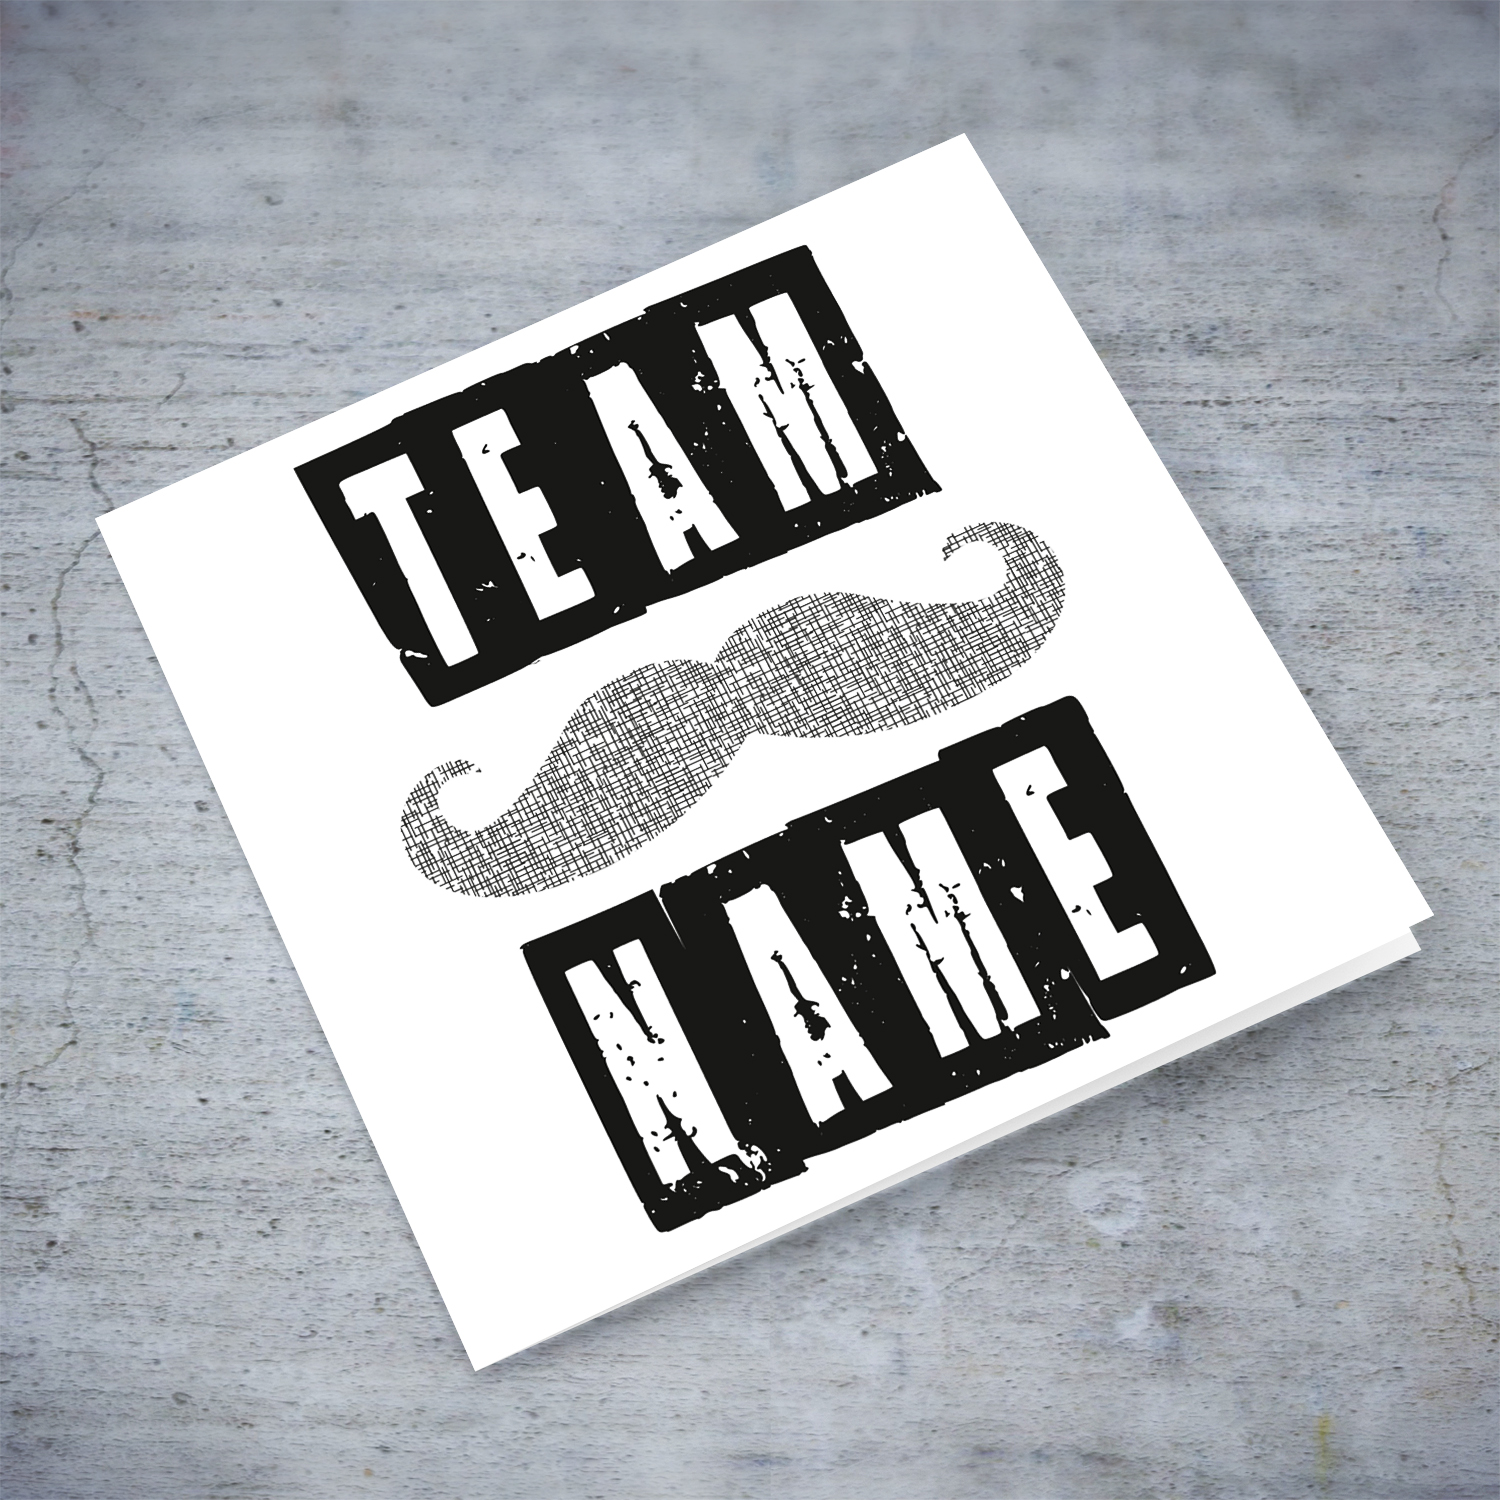 moustache team names